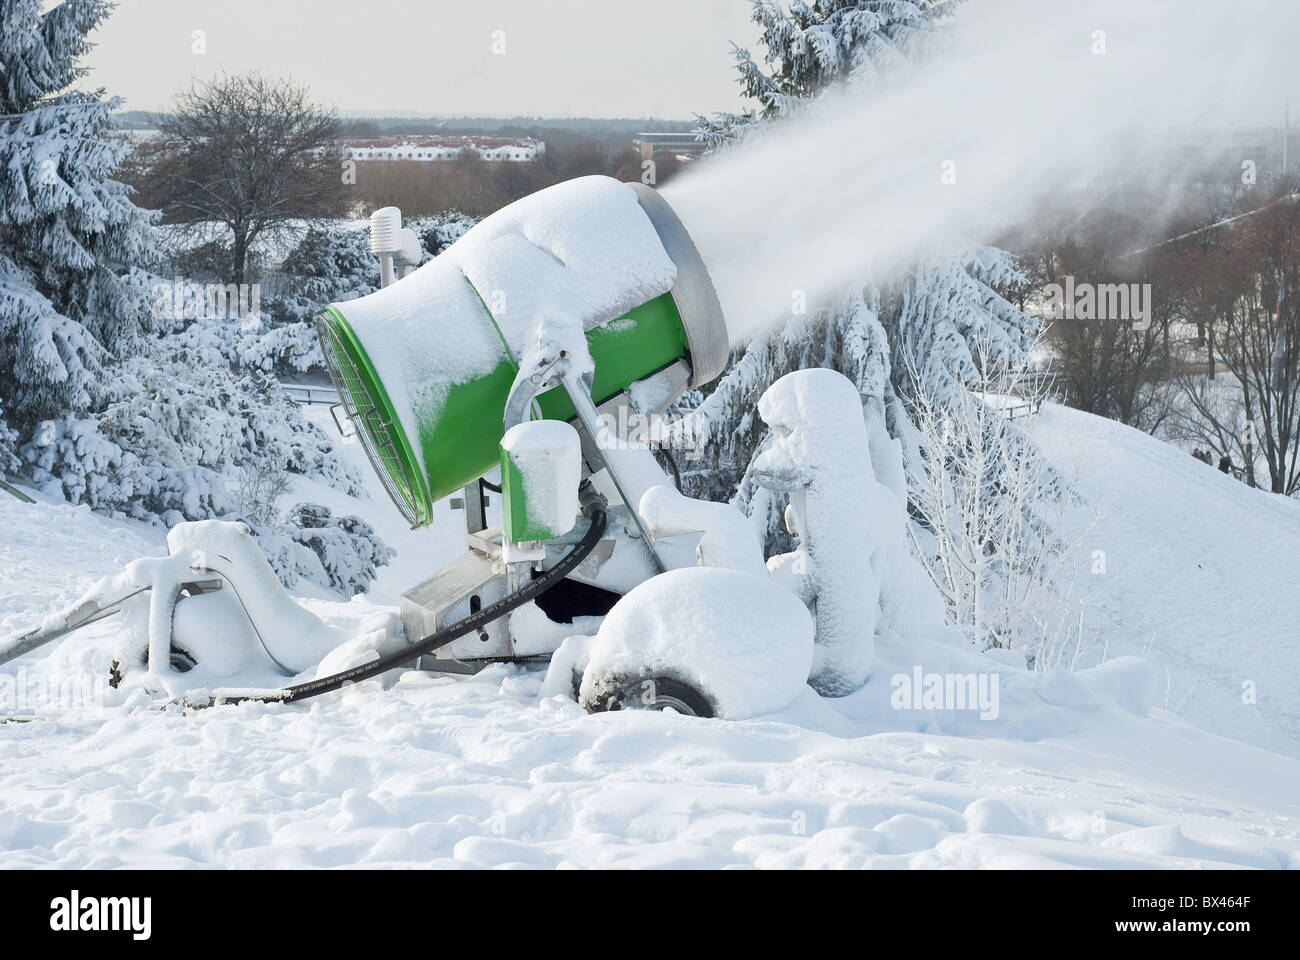 Neve cannoni preparazione di neve per gli sport invernali Foto Stock